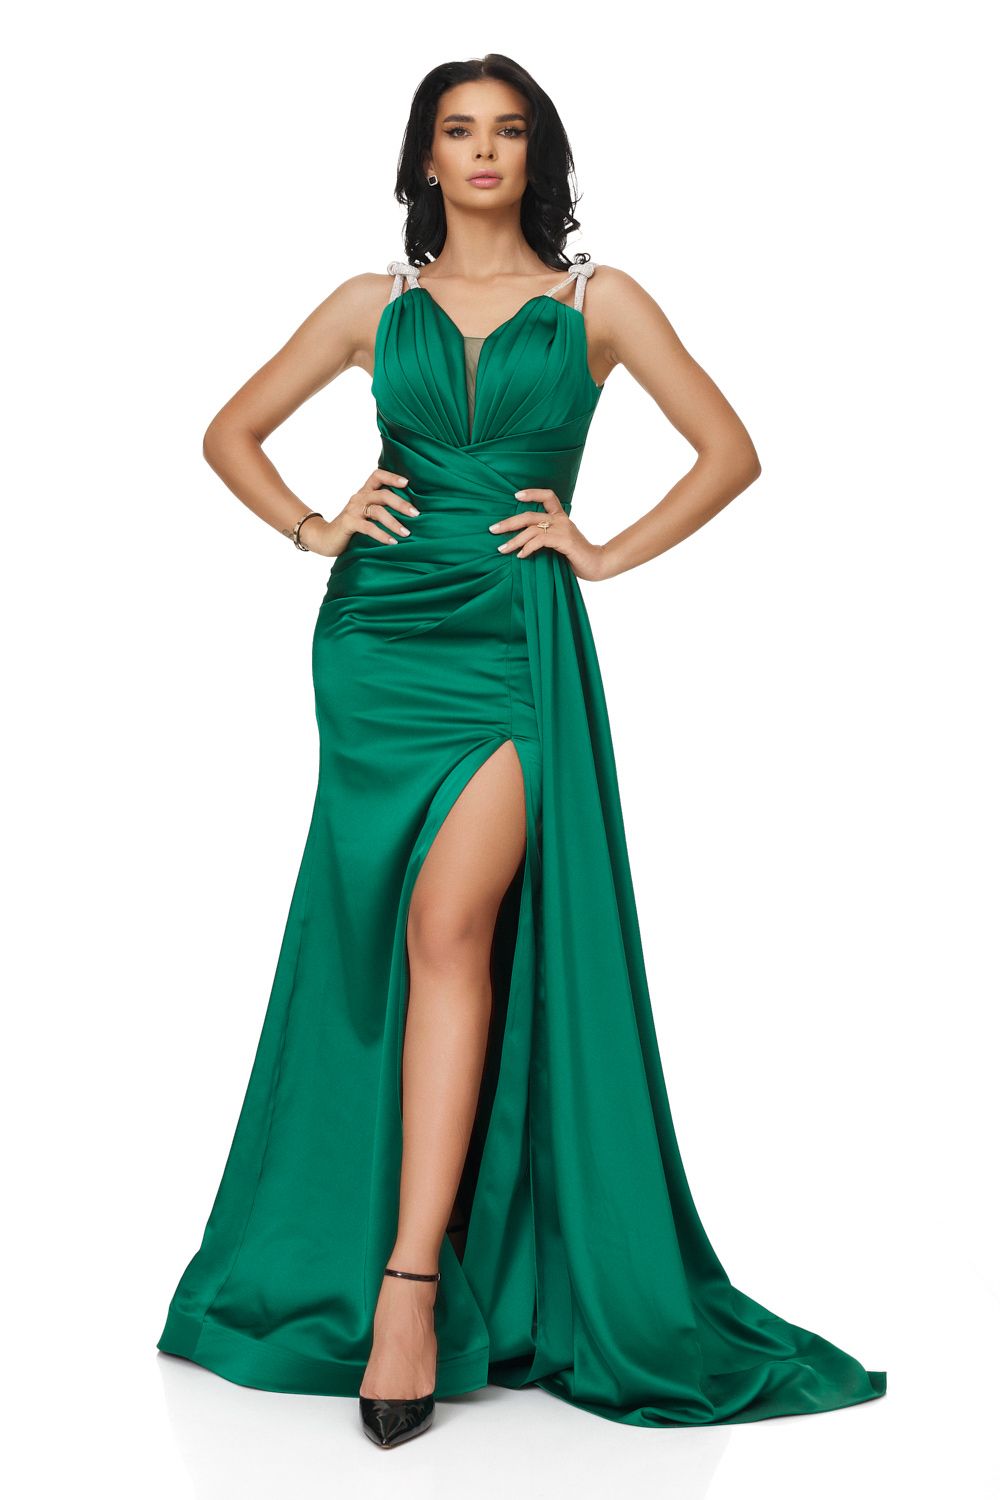 Olepy Bogas hosszú zöld női ruha